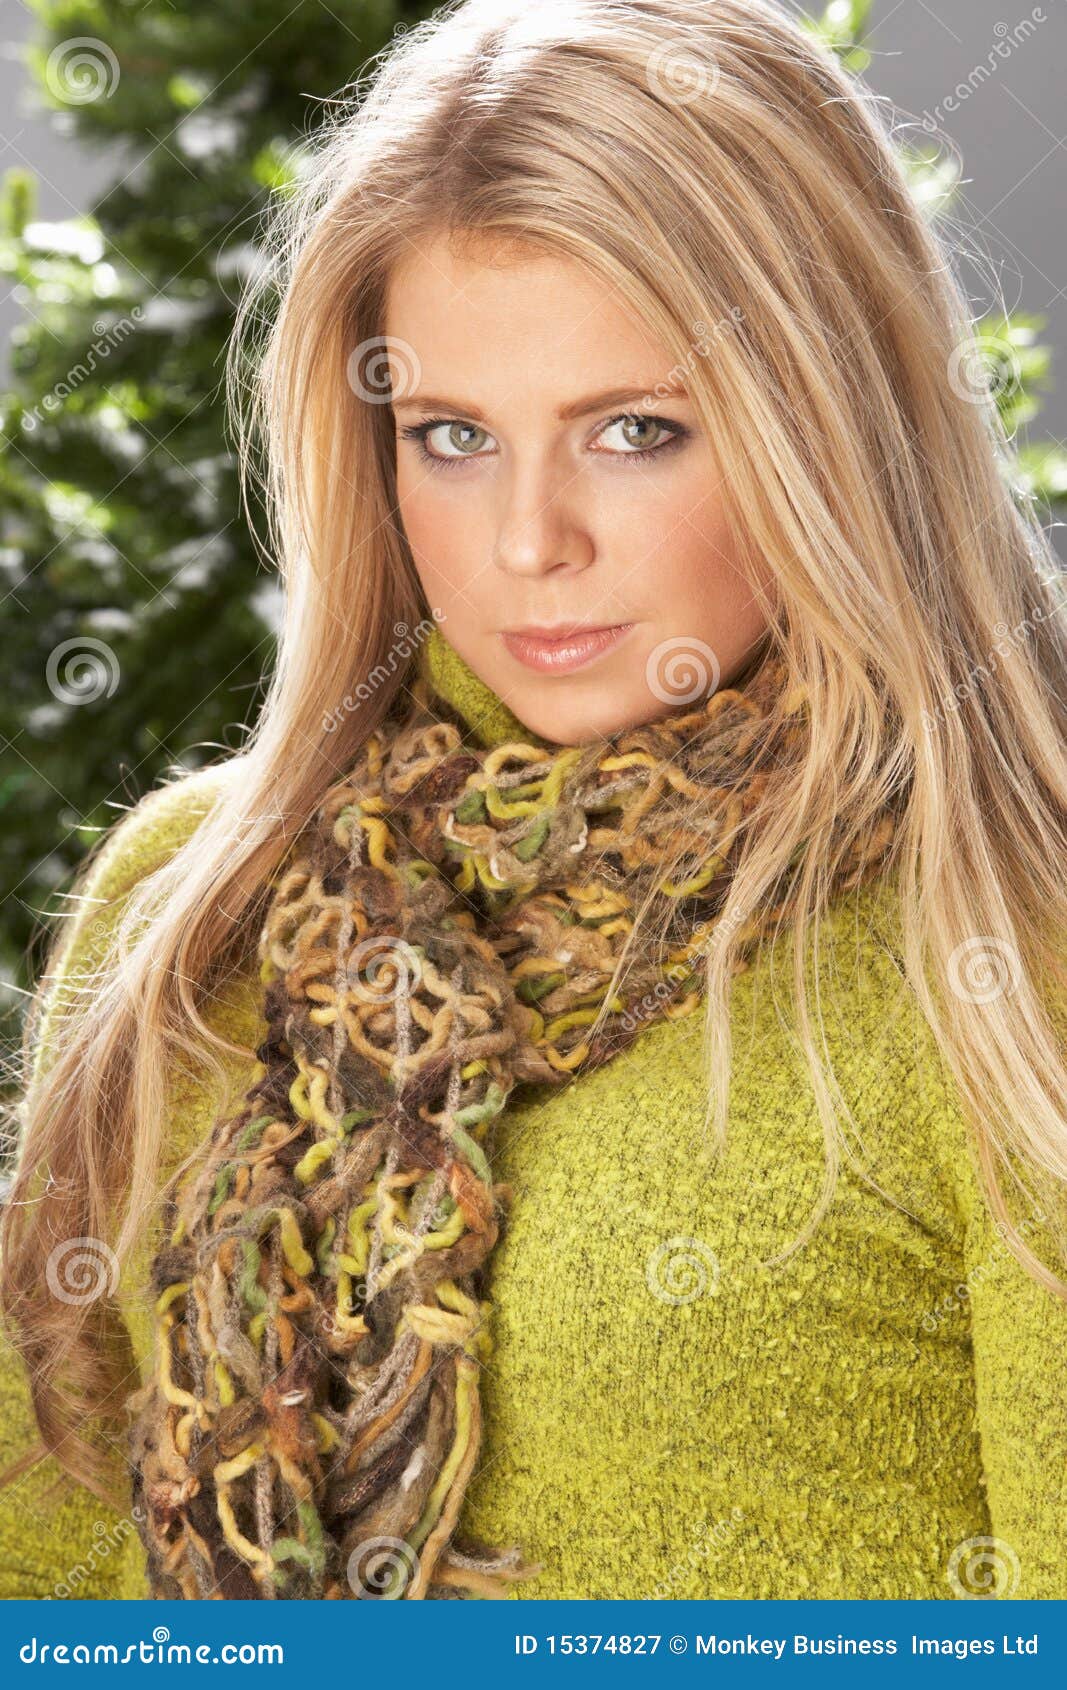 fashionable woman wearing knitwear in studio